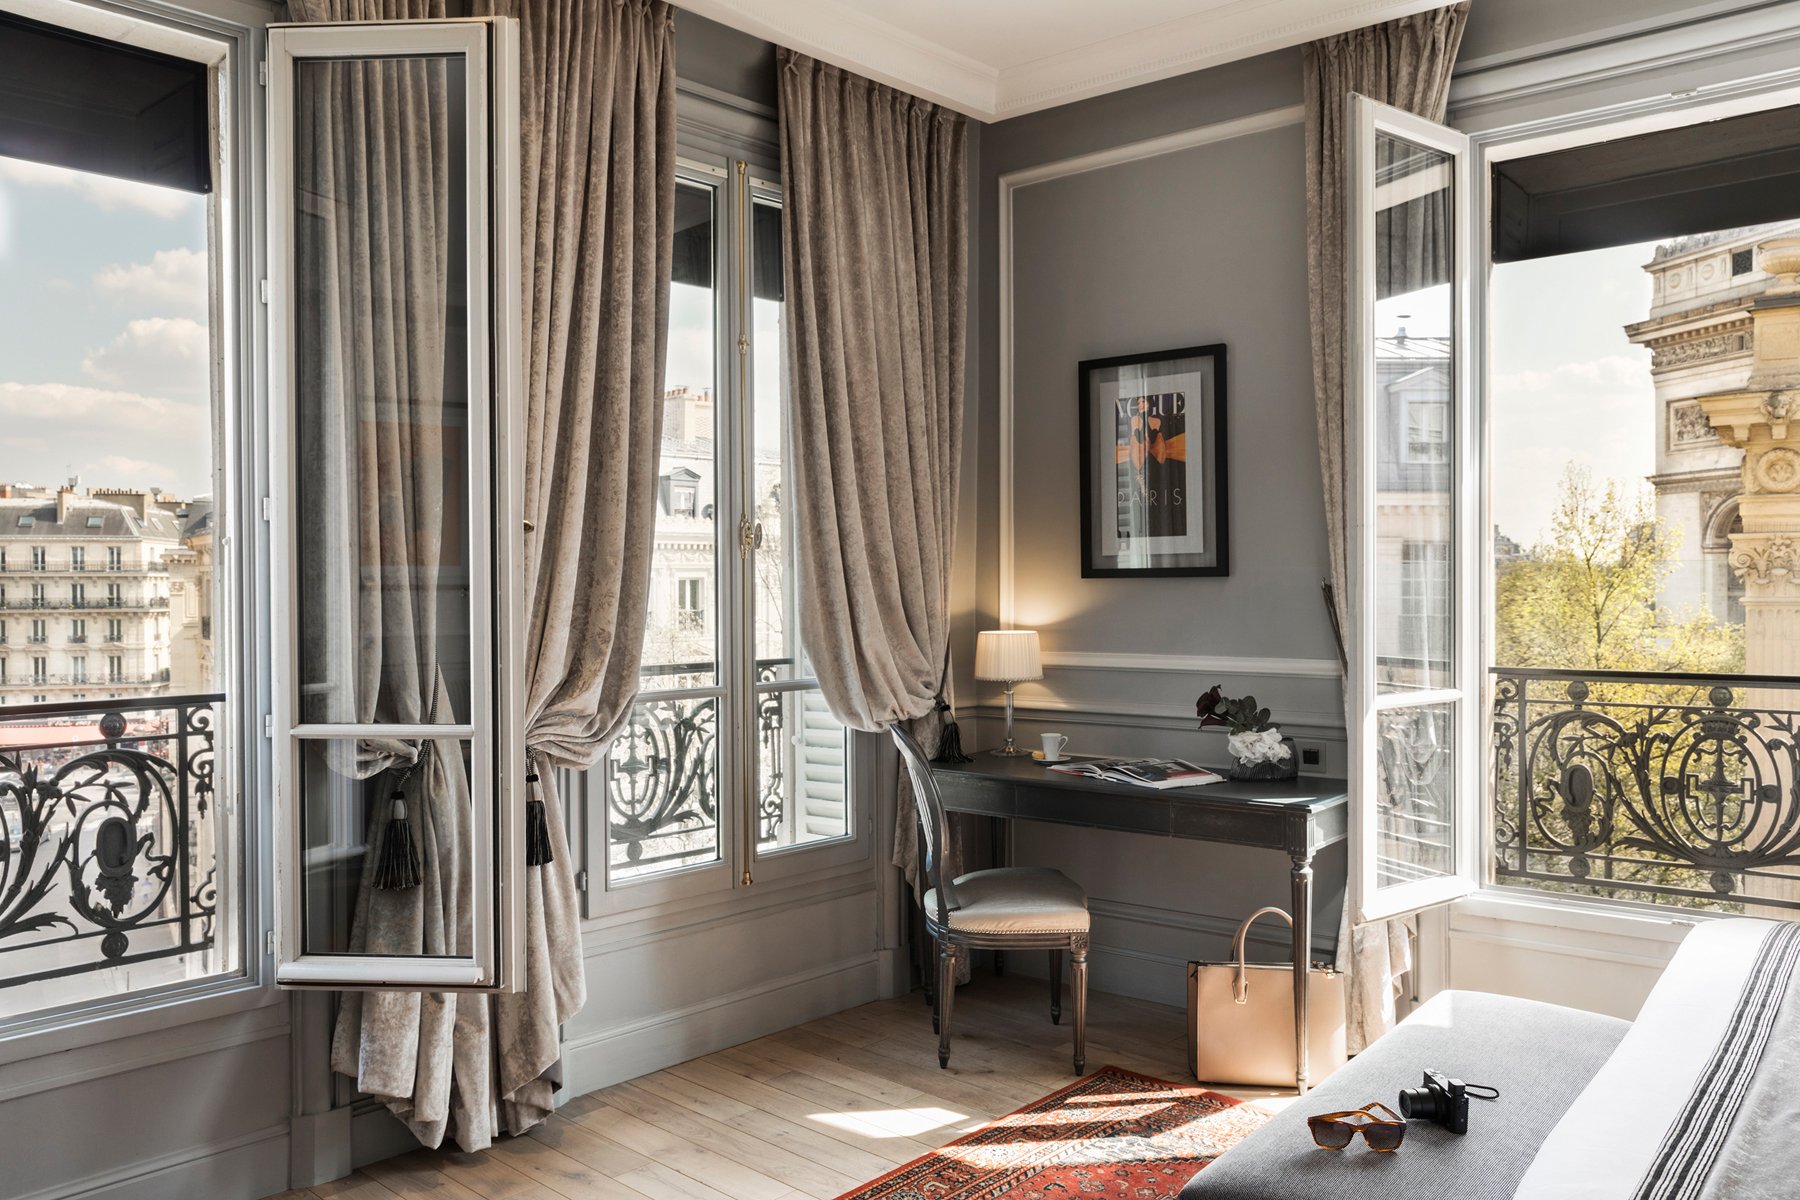 Maison Albar Hotels Le Champs-Elysées | Luxury hotel in Paris